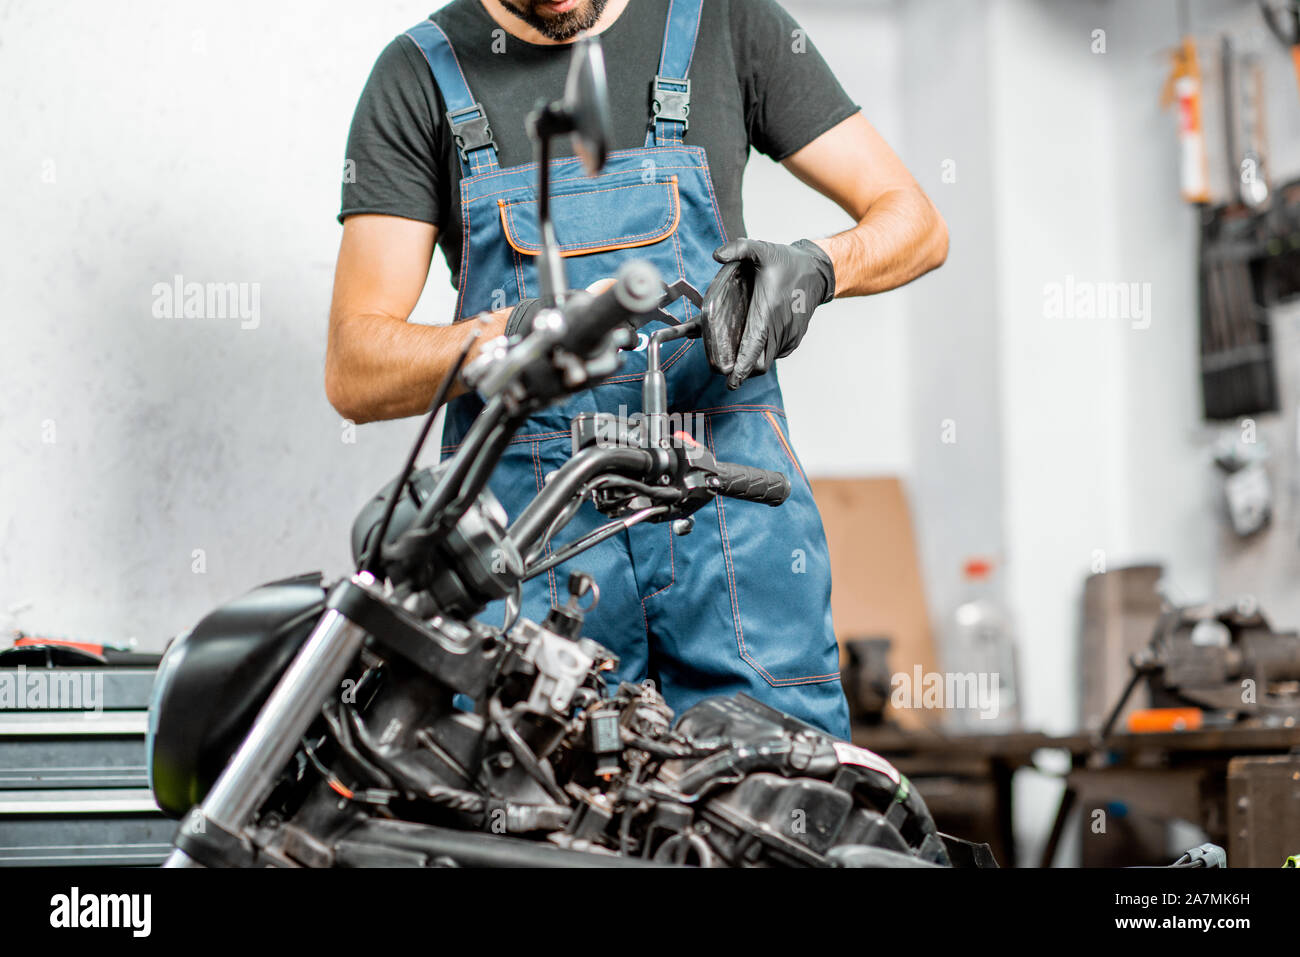 https://c8.alamy.com/compde/2a7mk6h/mechaniker-in-latzhosen-motorrad-reparieren-messen-spiegel-halter-fur-ersatz-oder-tuning-bei-dem-workshop-im-innenbereich-2a7mk6h.jpg